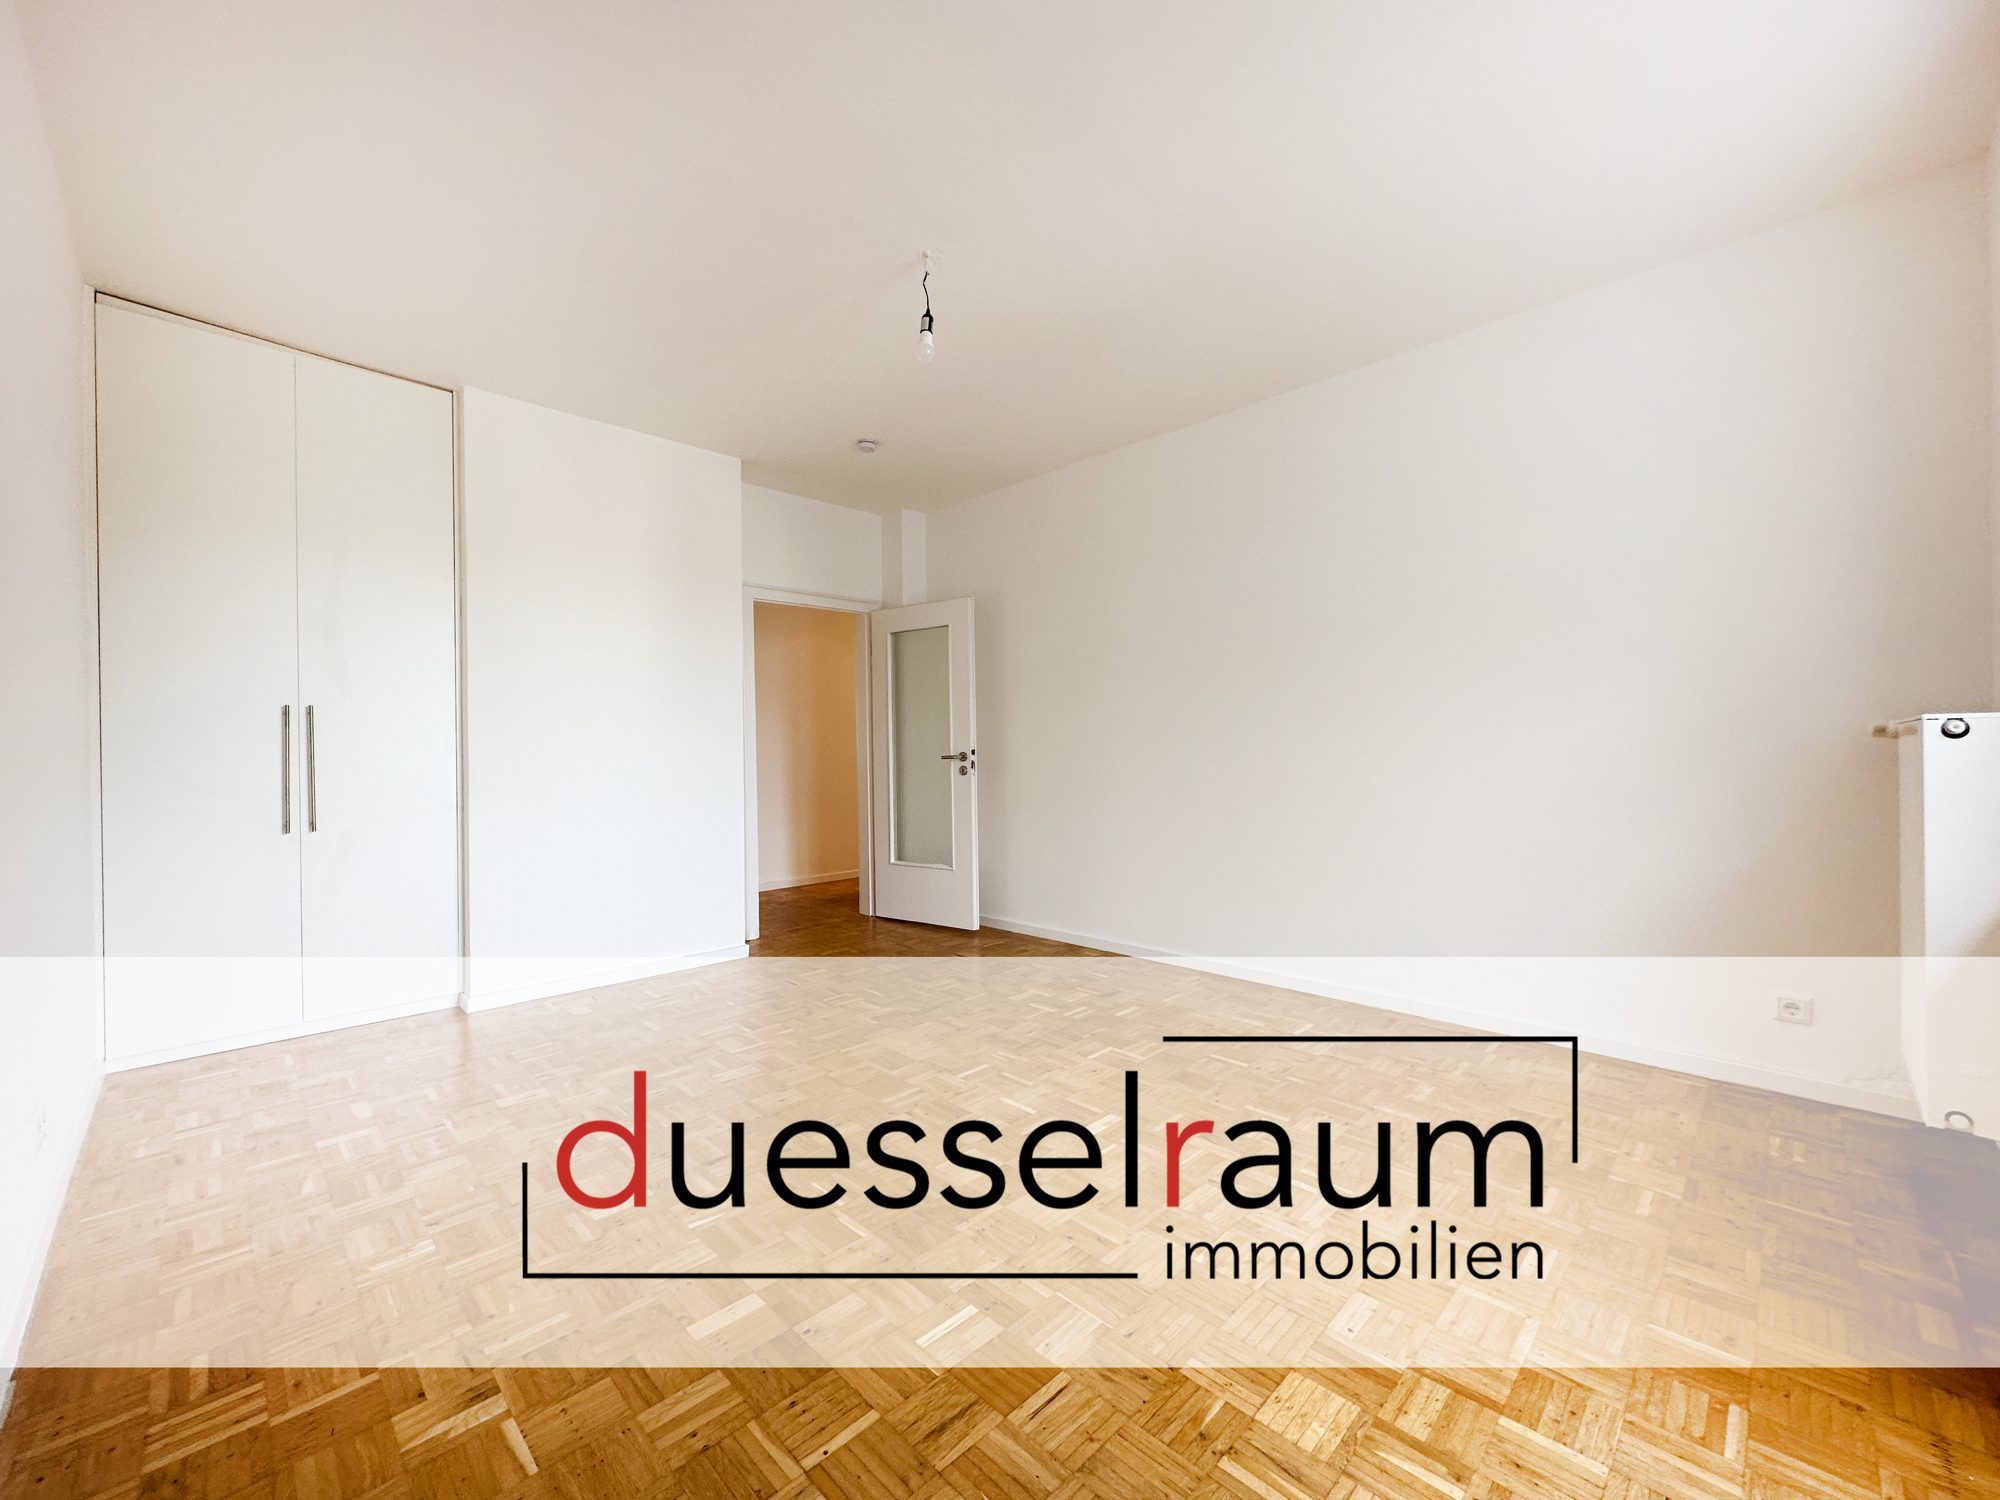 Immobilienangebot - Düsseldorf - Alle - Friedrichstadt: Renovierter Wohntraum mit neuer Einbauküche, Balkon und einem schönen Parkettboden!